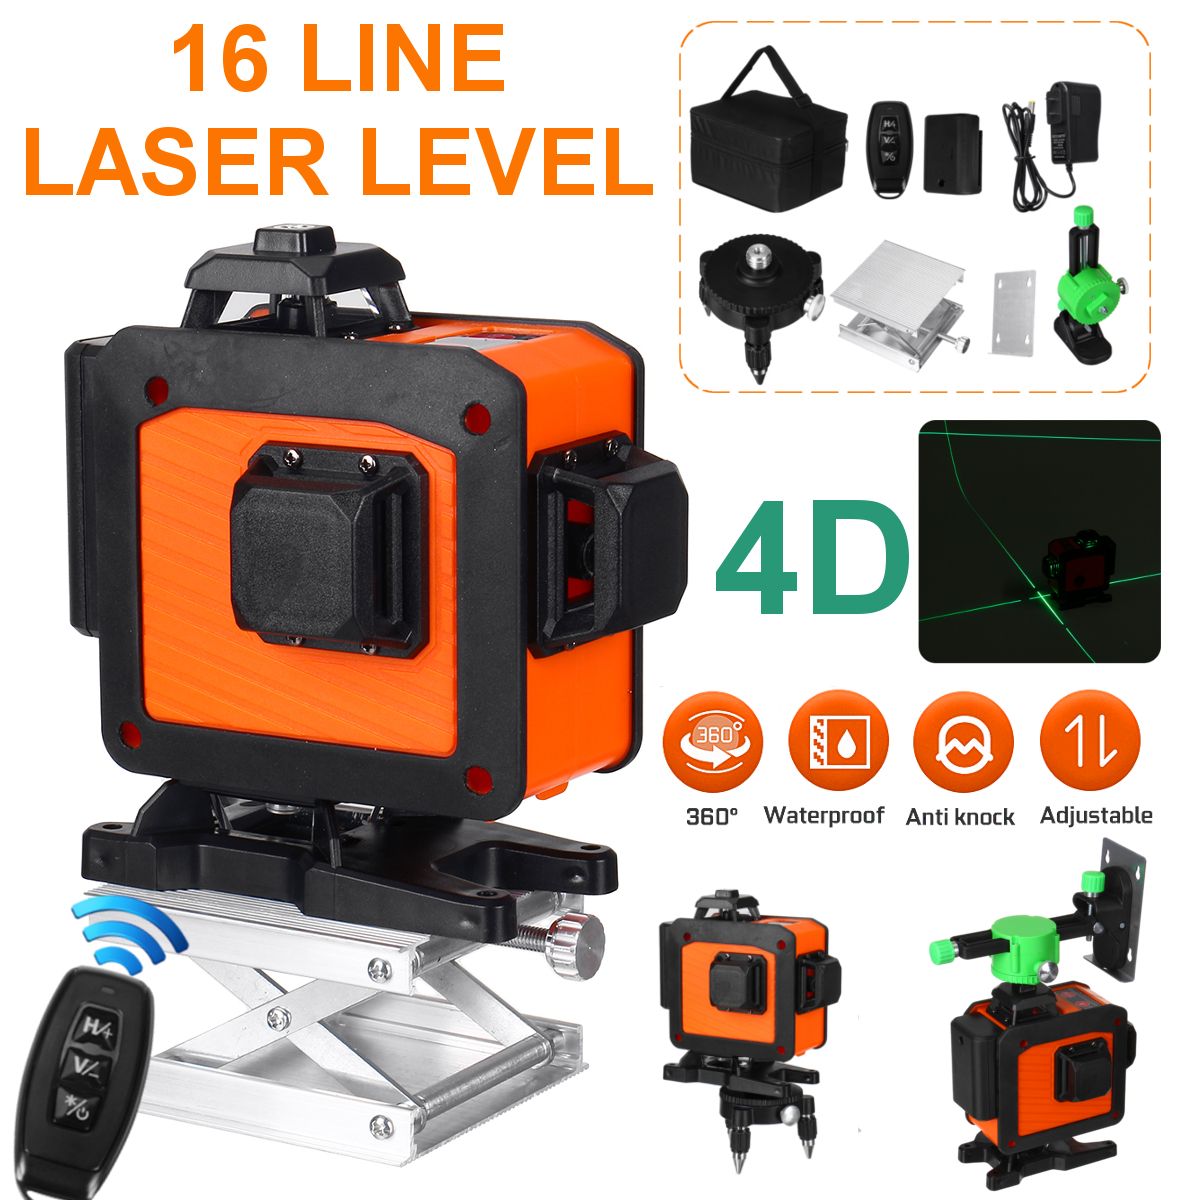 16-Line-Laser-Level-Green-Light-Auto-Self-Leveling-Cross-360deg-Rotary-Measuring-1740210